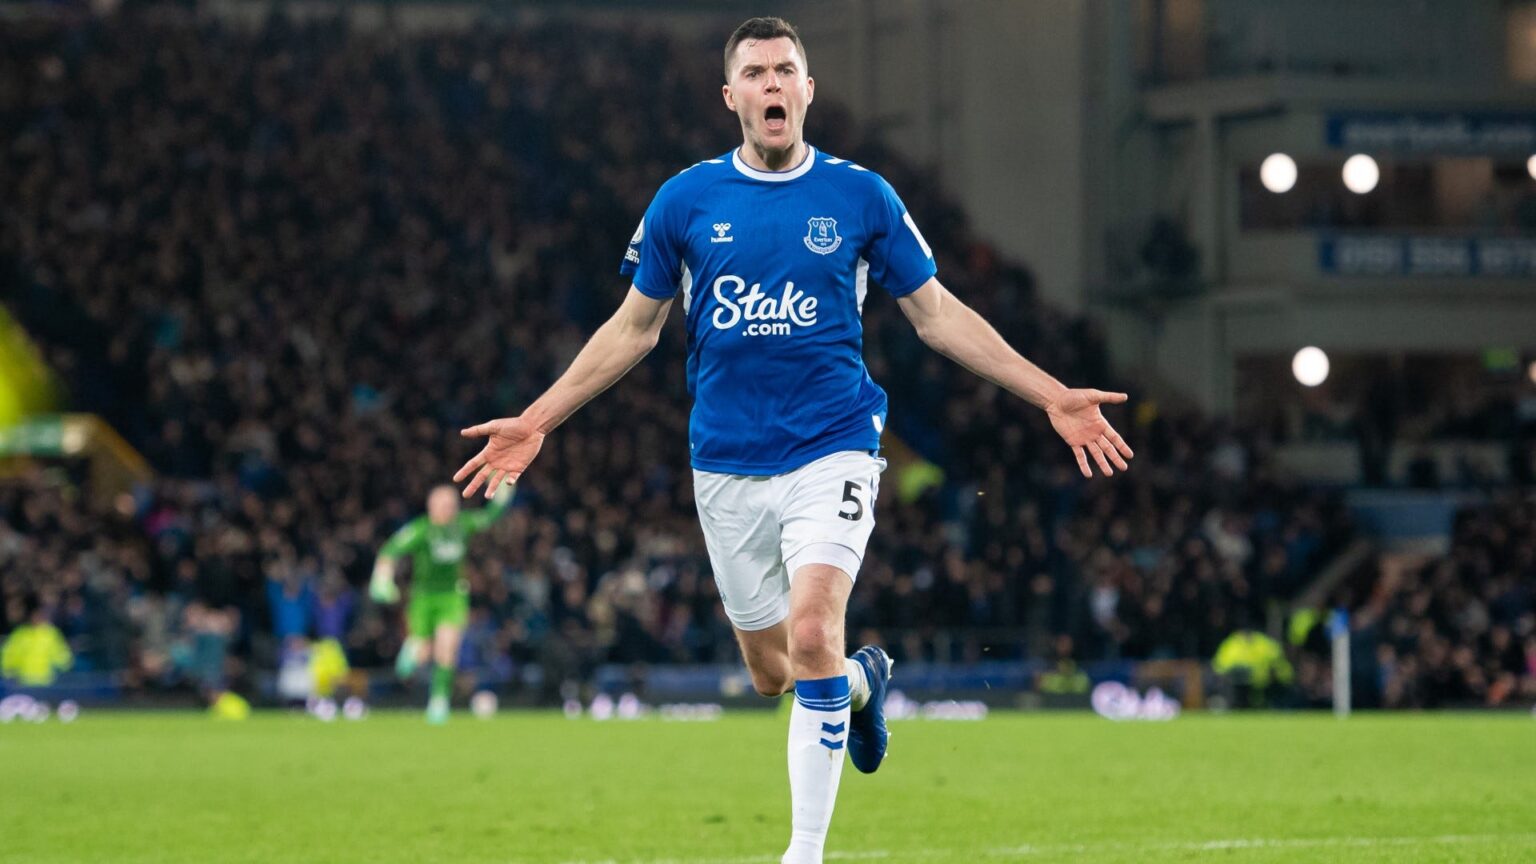 Stunning strike sees Everton equalise last-minute  